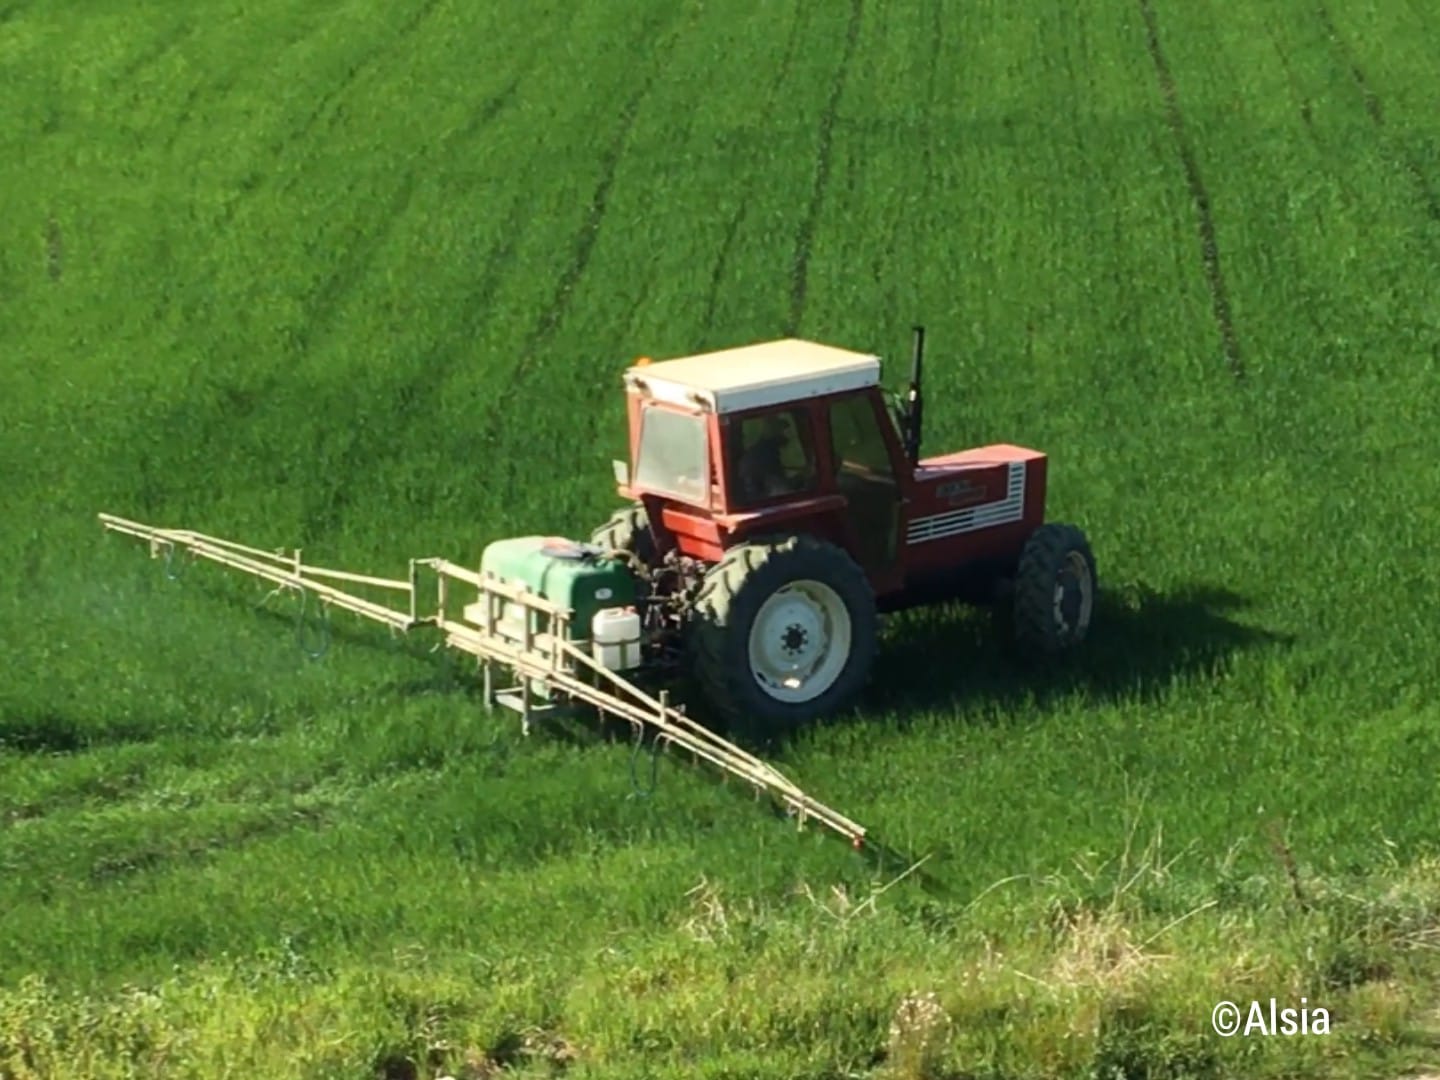 Servizi di Consulenza fitosanitaria ALSIA: aperto il secondo Bando a sportello per le aziende agricole della Basilicata (Sottomisura 2.1 del PSR 2014-2020 della Regione Basilicata)